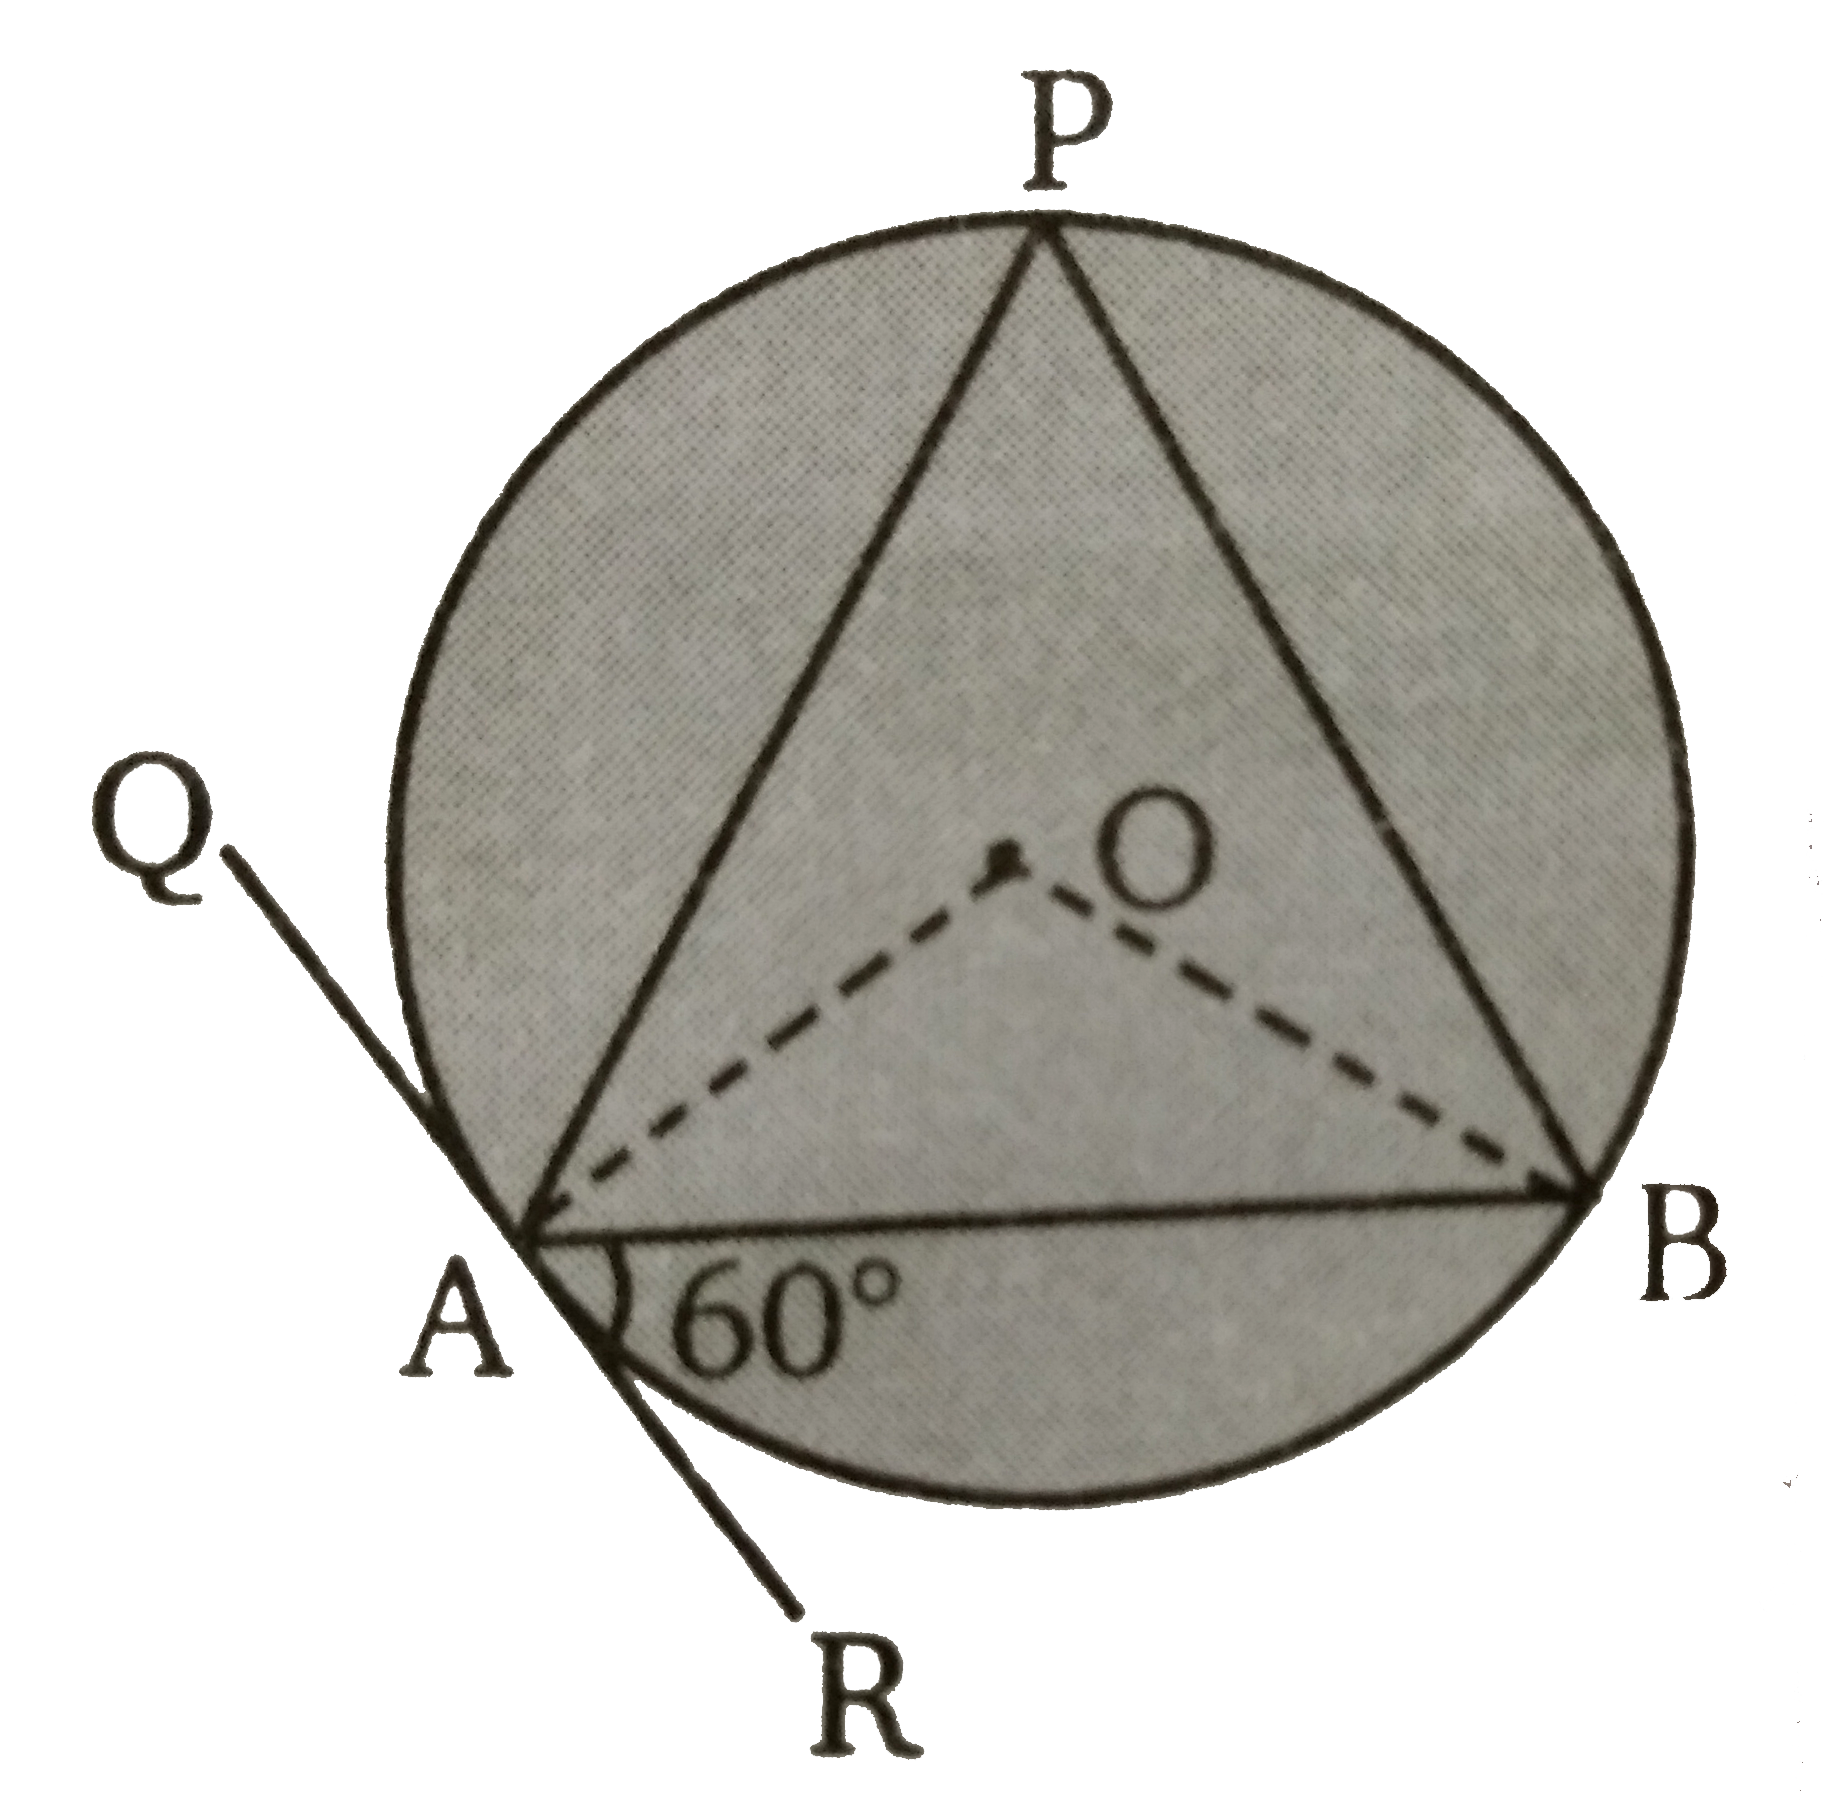 संलग्न चित्र में O  वृत्त का केंद्र है। QAR, A  पर स्पर्शी है। AB  वृत्त की जीवा है। यदि angle BAR = 60^(@)  तब angle AOB  व angle OBA  के मान ज्ञात कीजिए ।